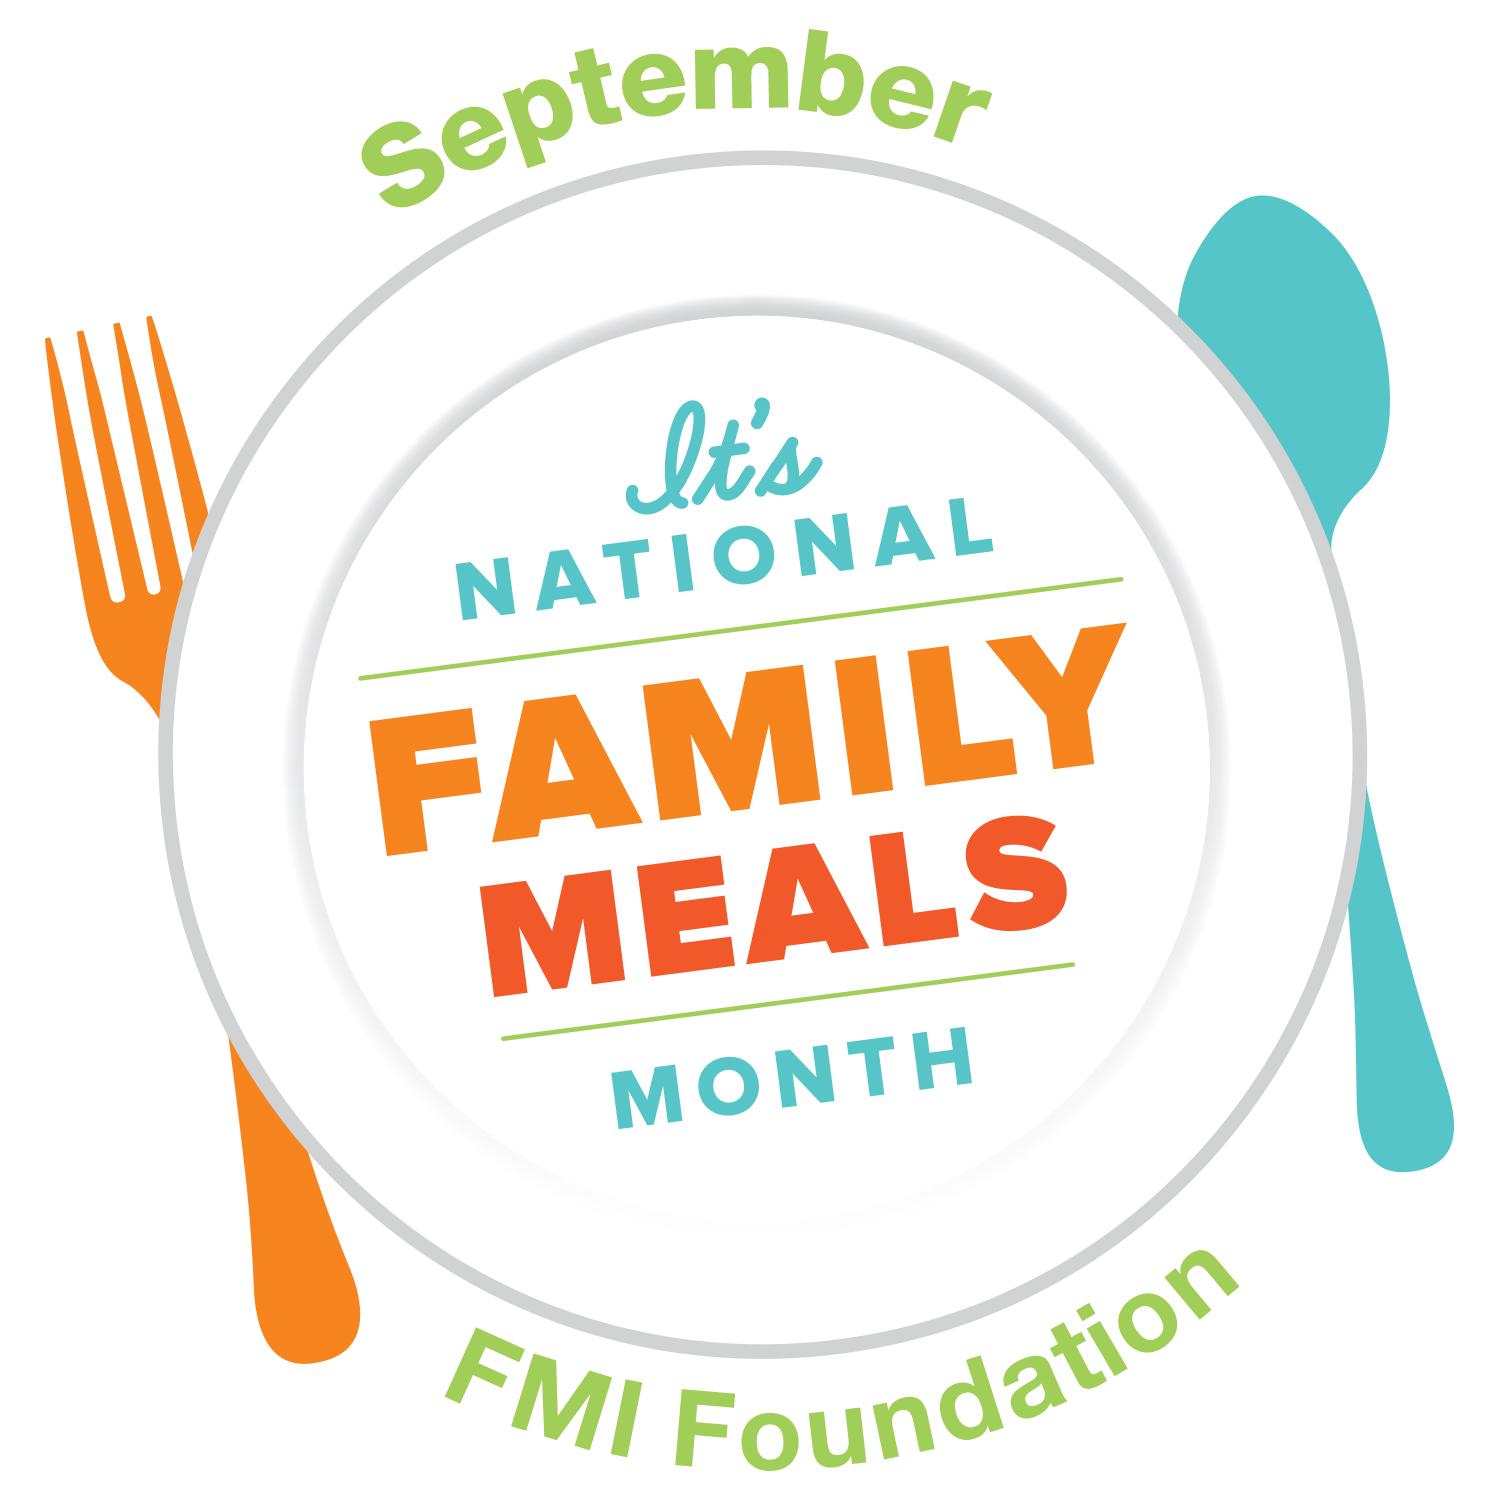 FMI Logo - NFMM logo Sept FMI Foundation. Fight Bac!